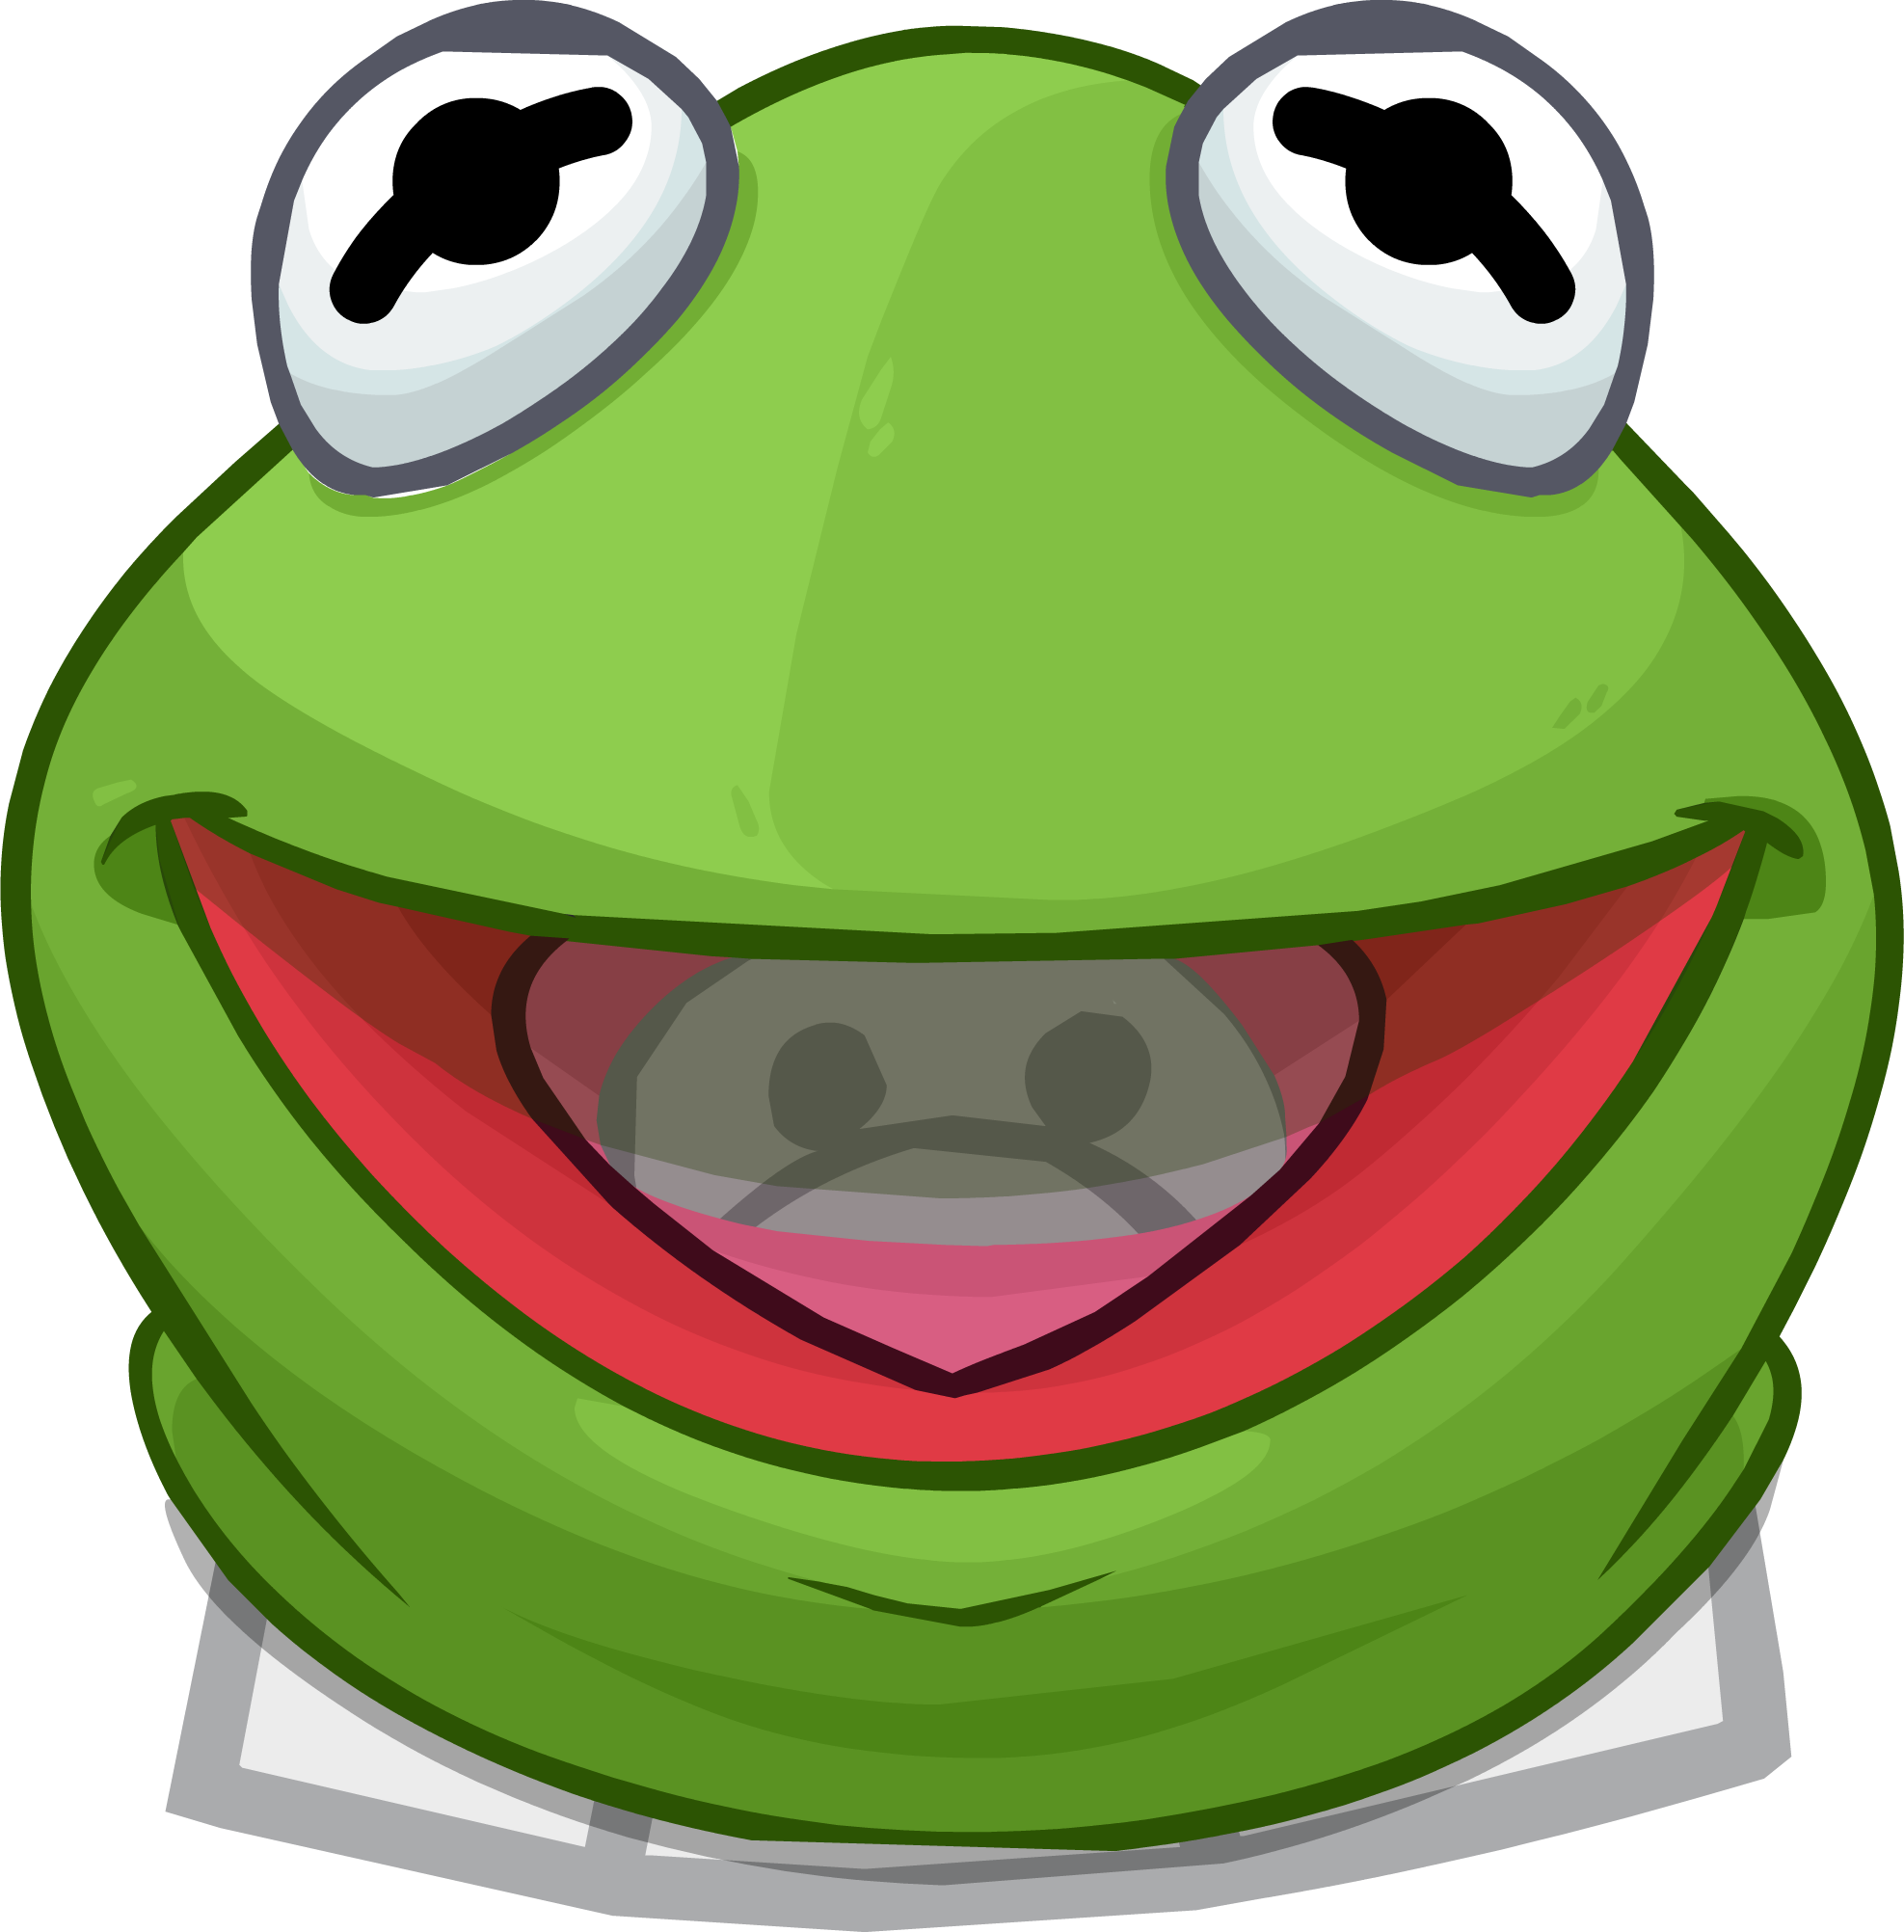 Kermitthe Frog Cartoon Portrait